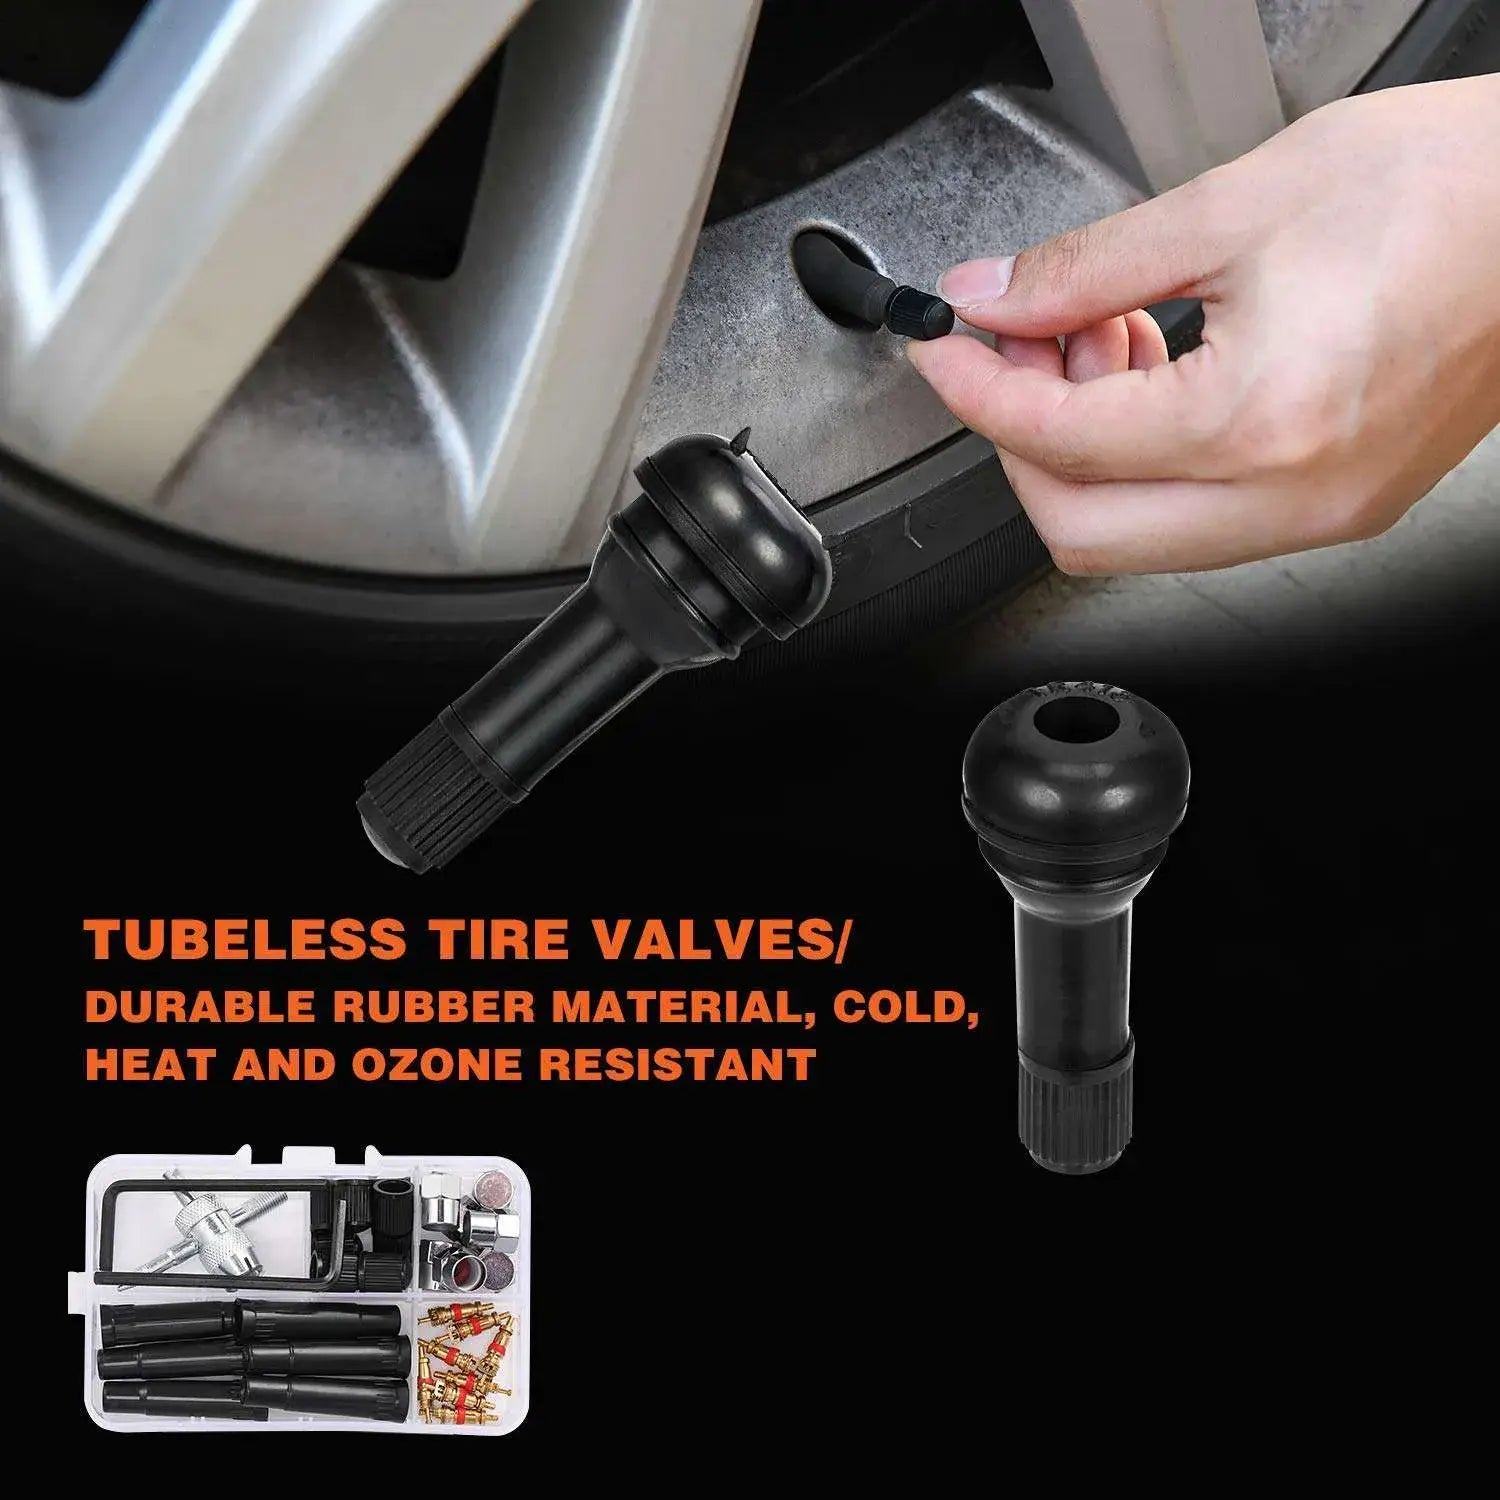 tubeless tire valves